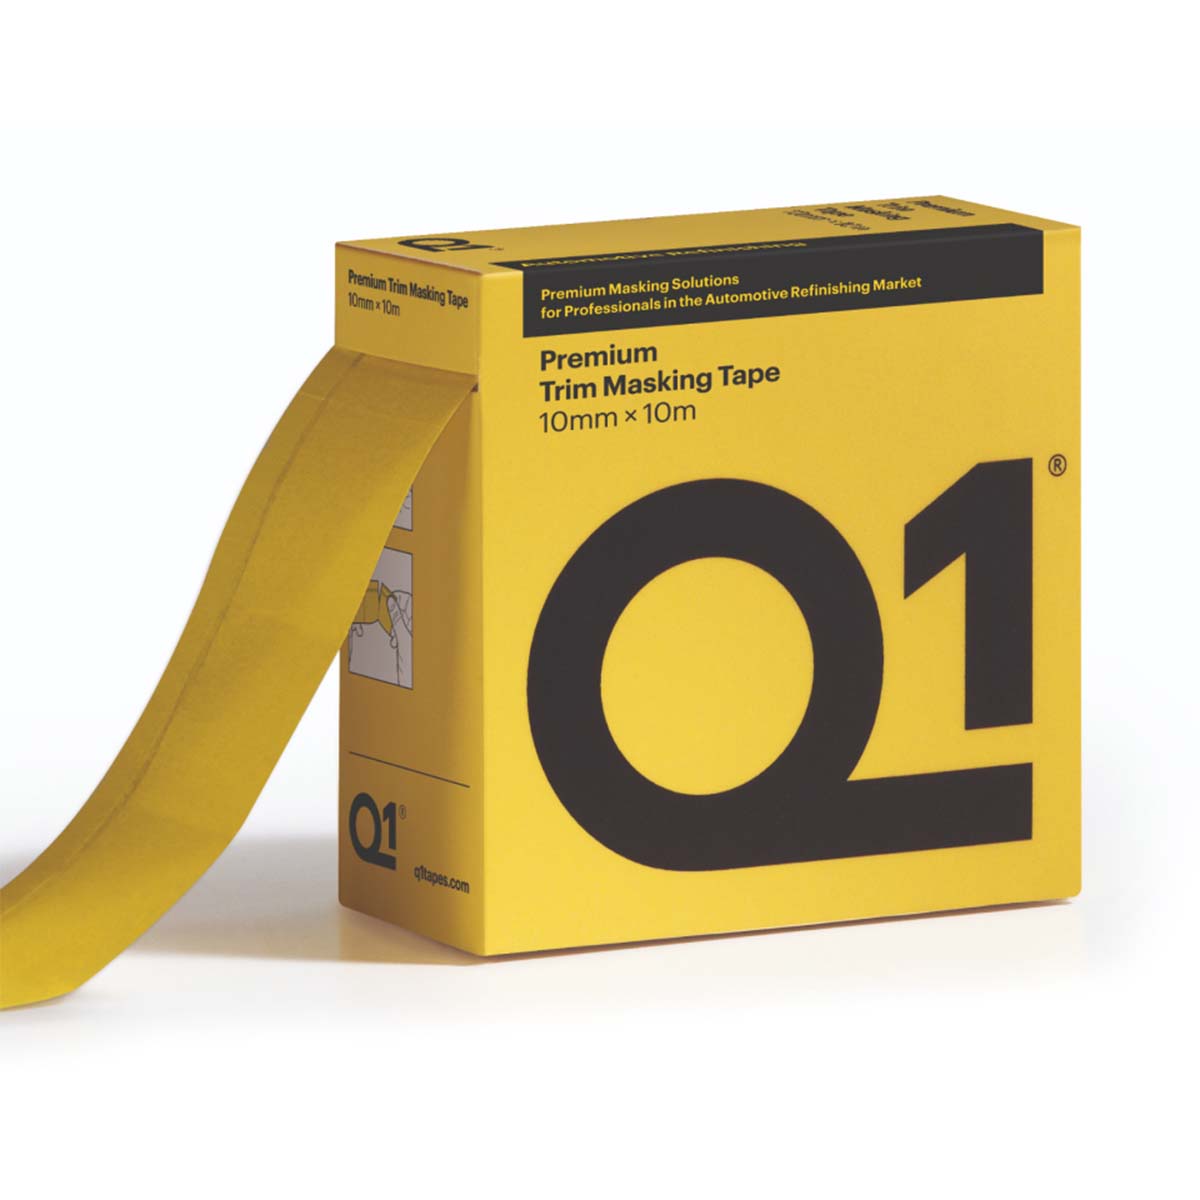 Q1 Premium Trim Masking Tape